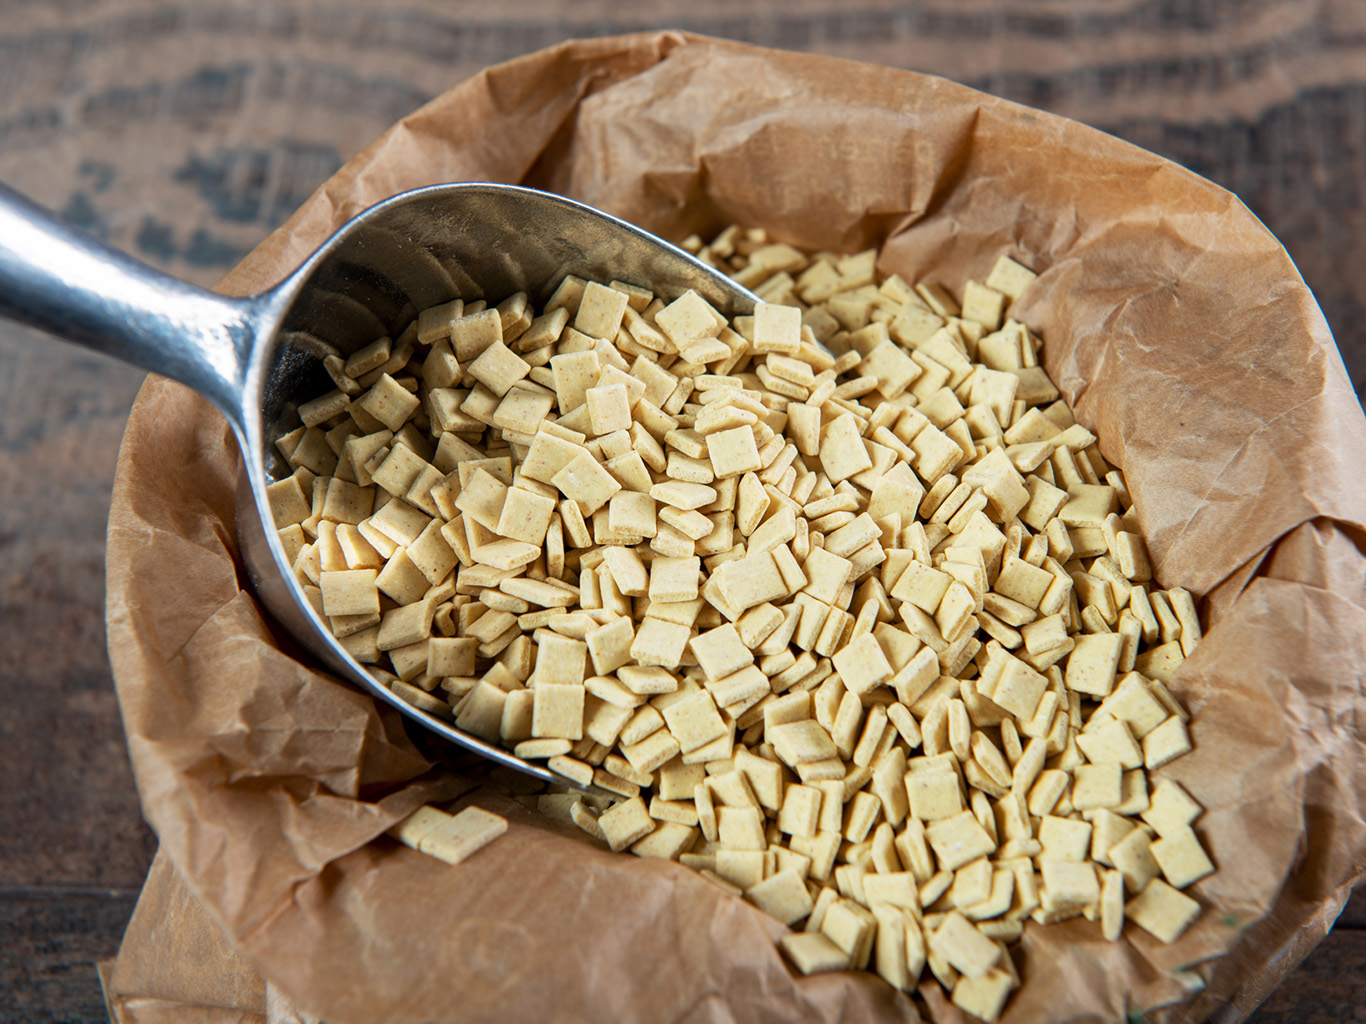 Savojské těstoviny crozets se nejčastěji vyrábí z pohankové mouky